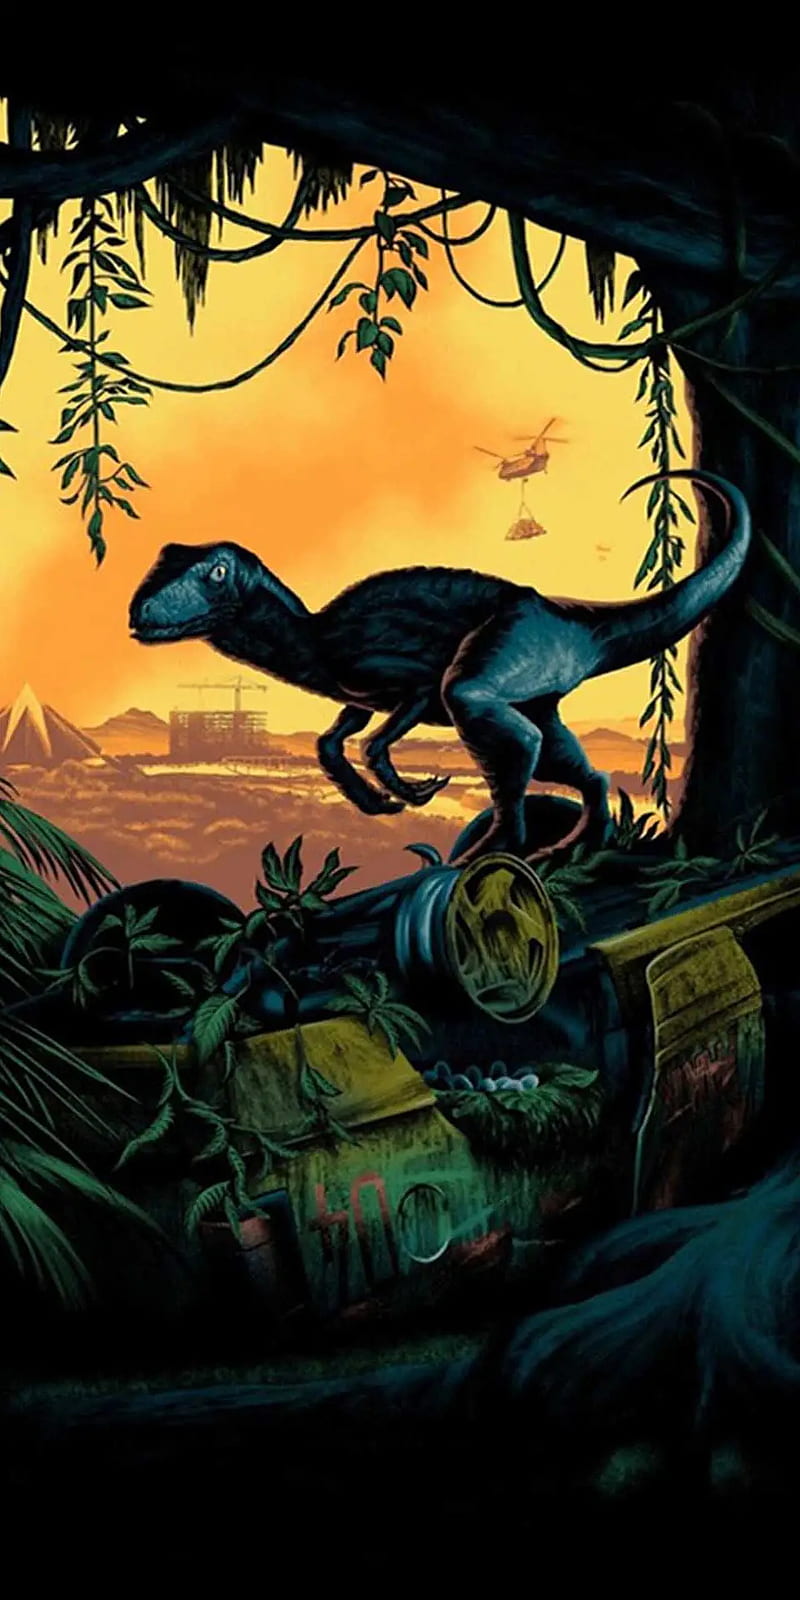 100 Jurassic Park Wallpapers  Wallpaperscom